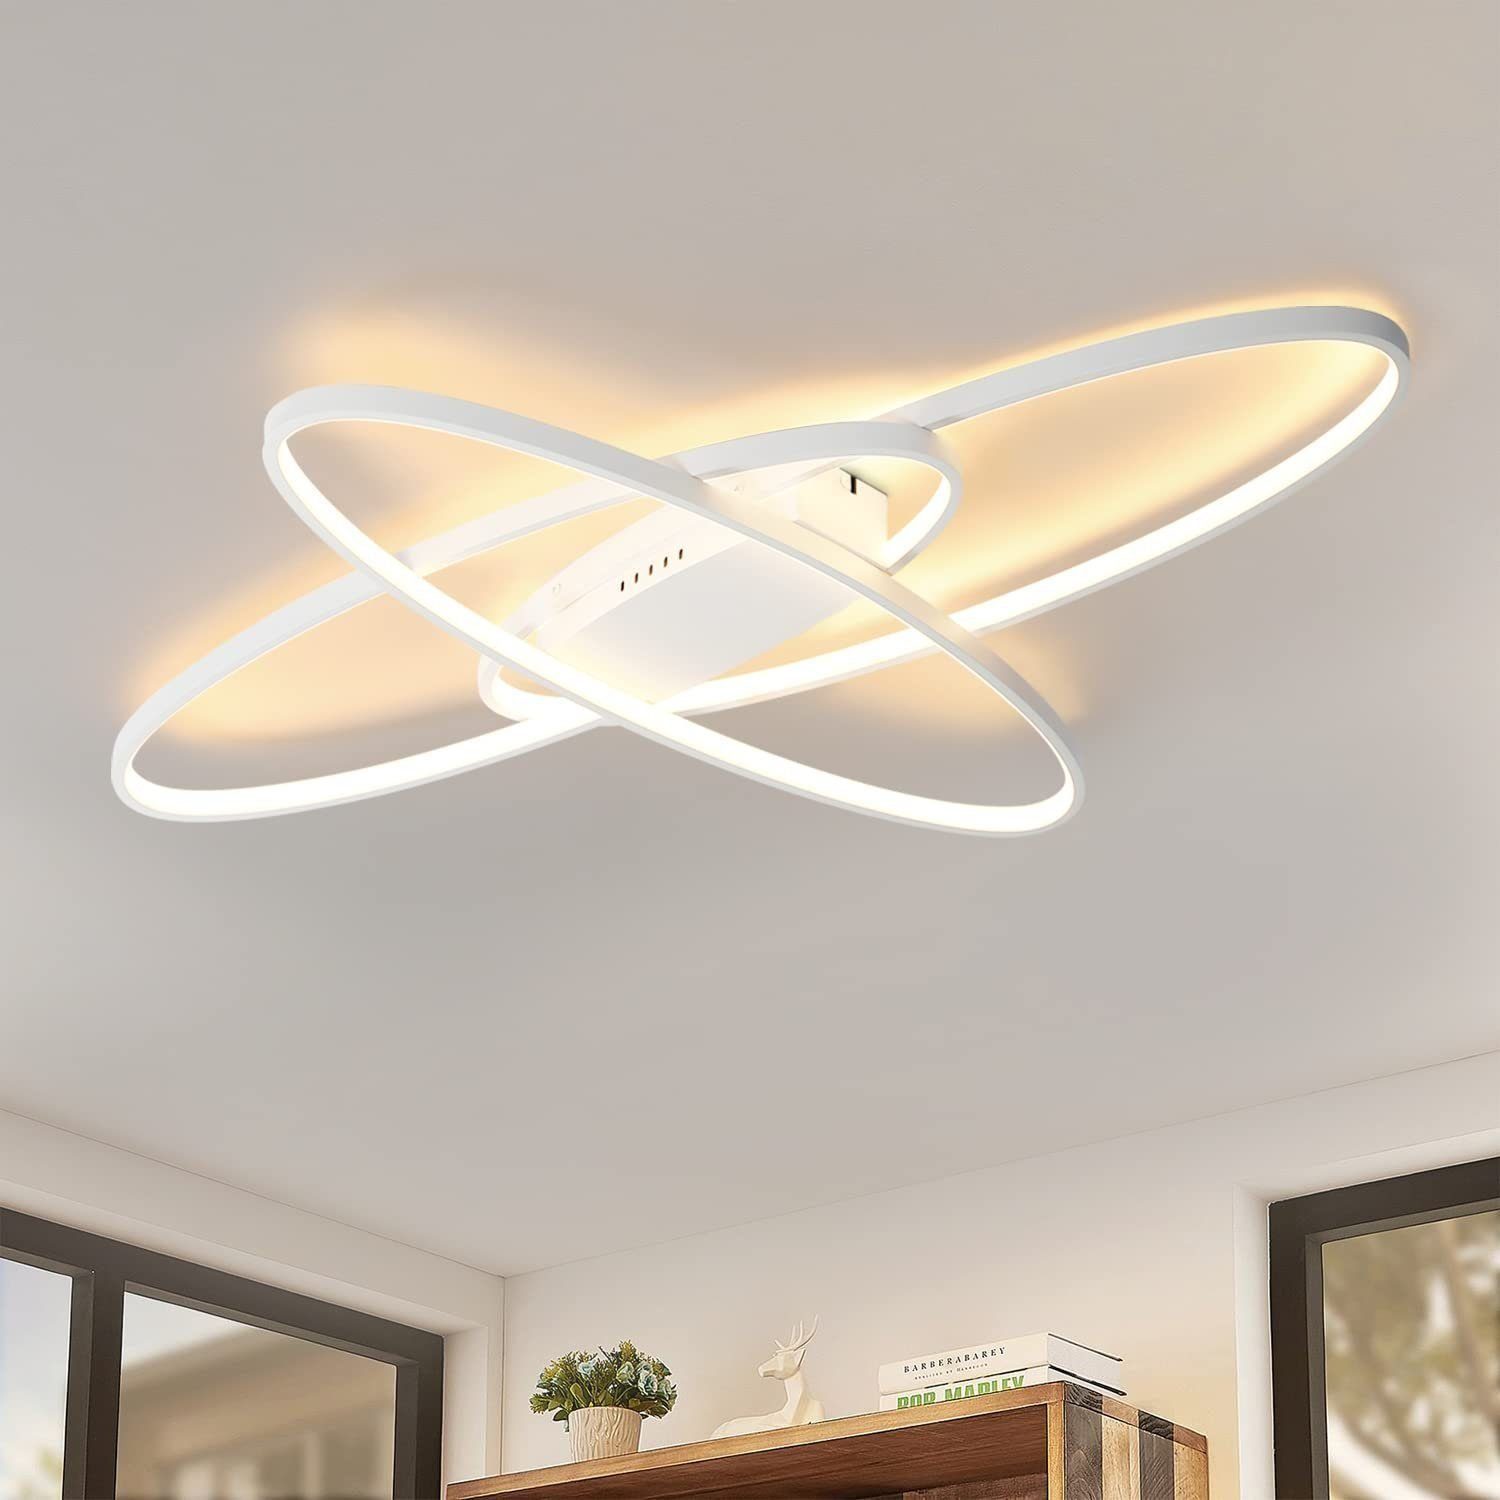 DOPWii Deckenleuchten LED Leuchte,3-farbig Deckenlampe mit Fernbedienung Weiss